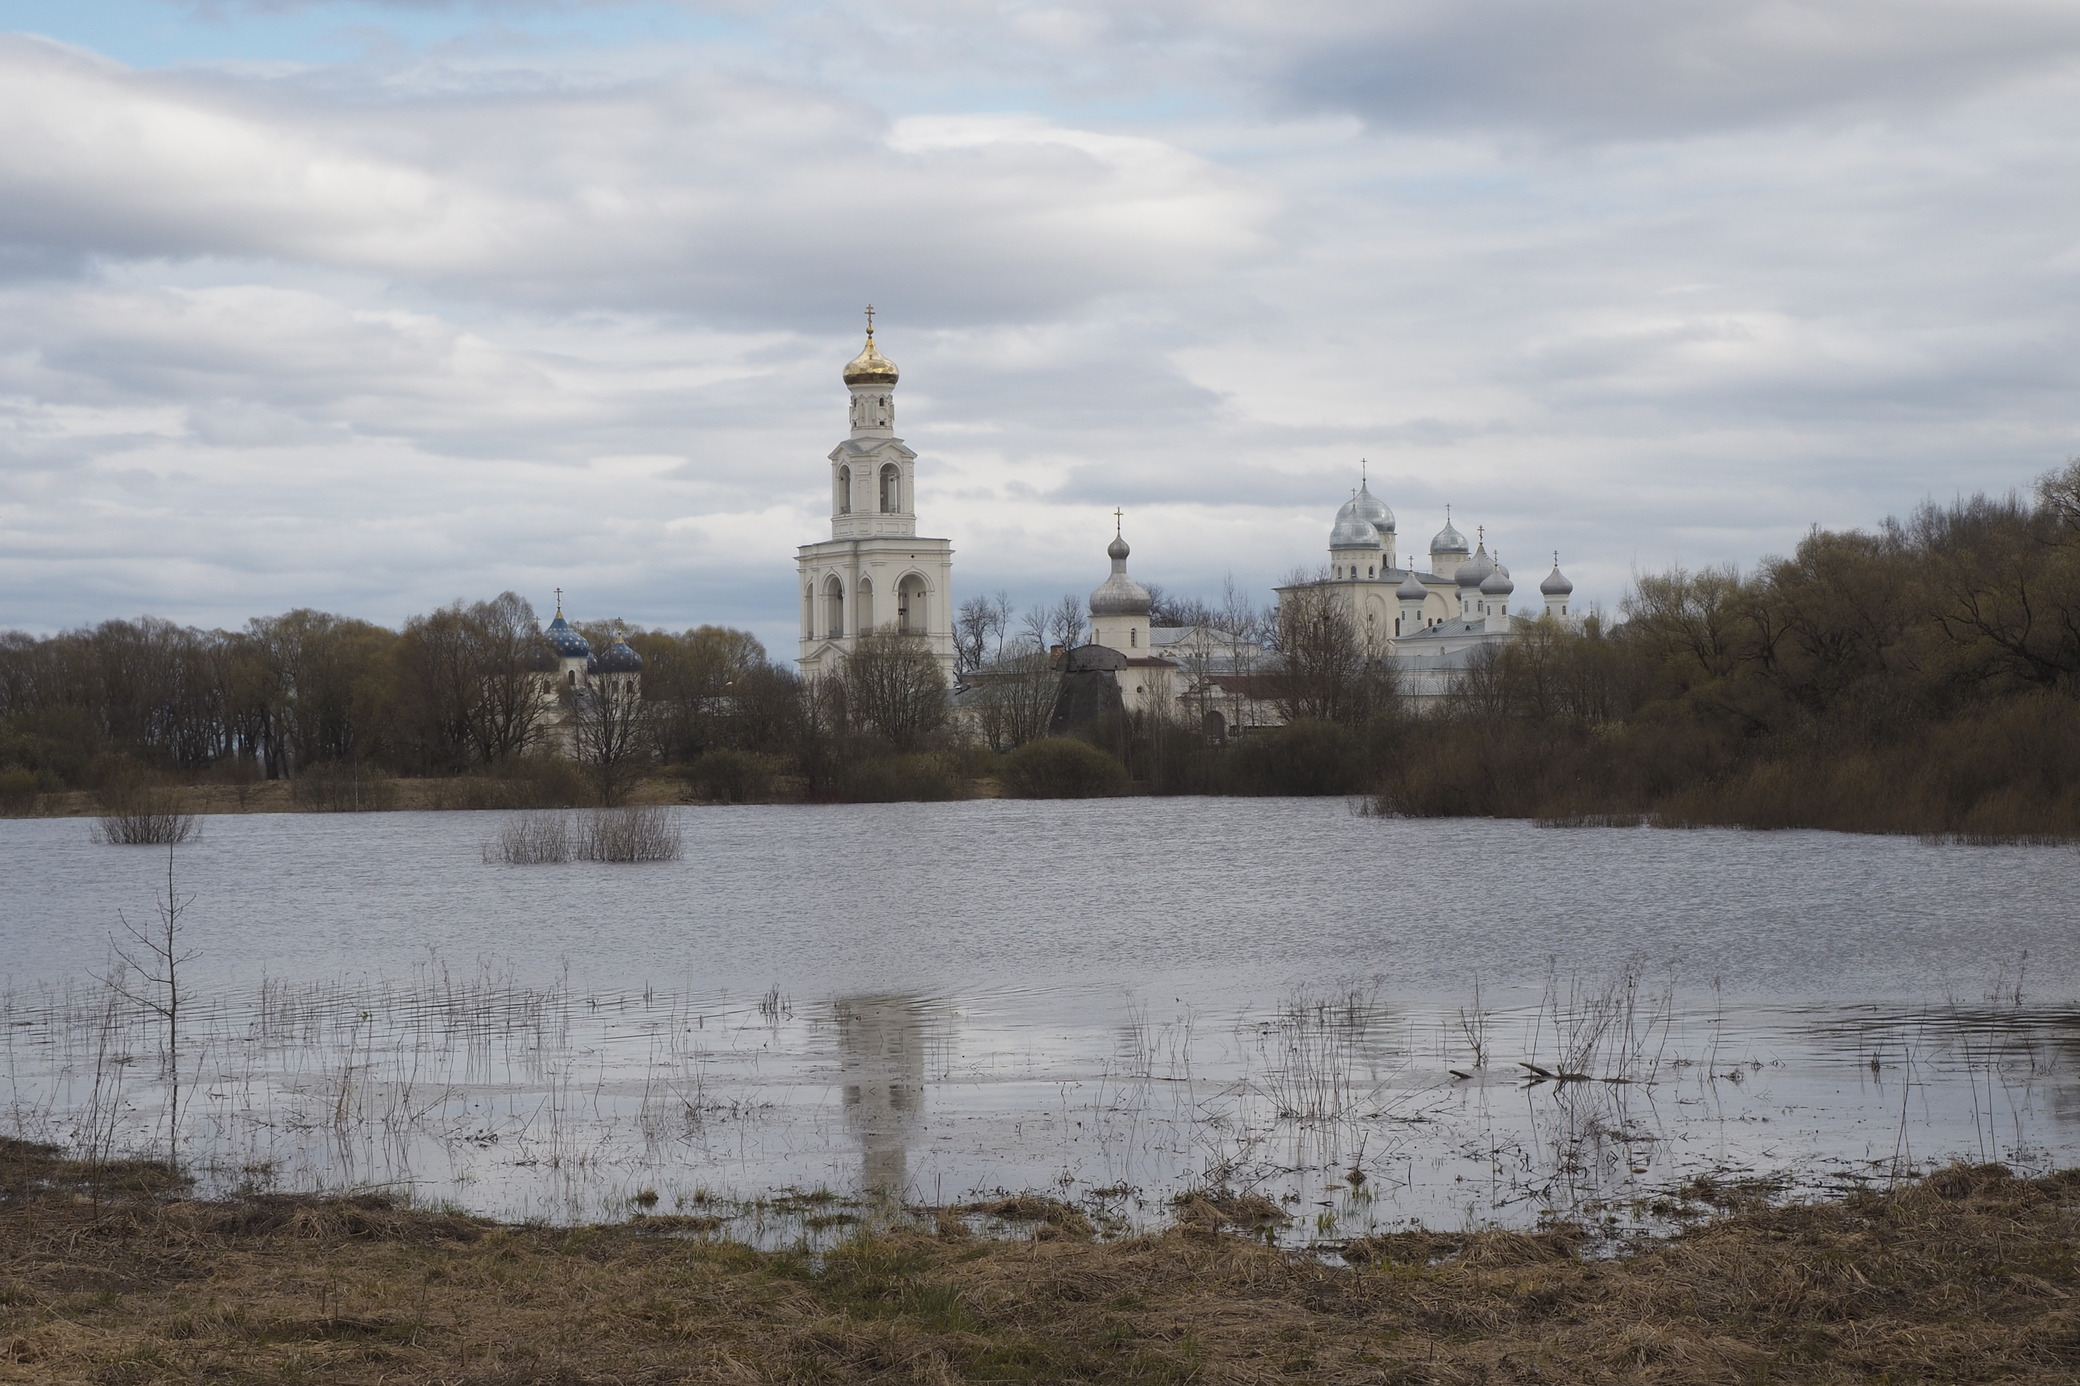 Юрьево монастырь. Великий Новгород